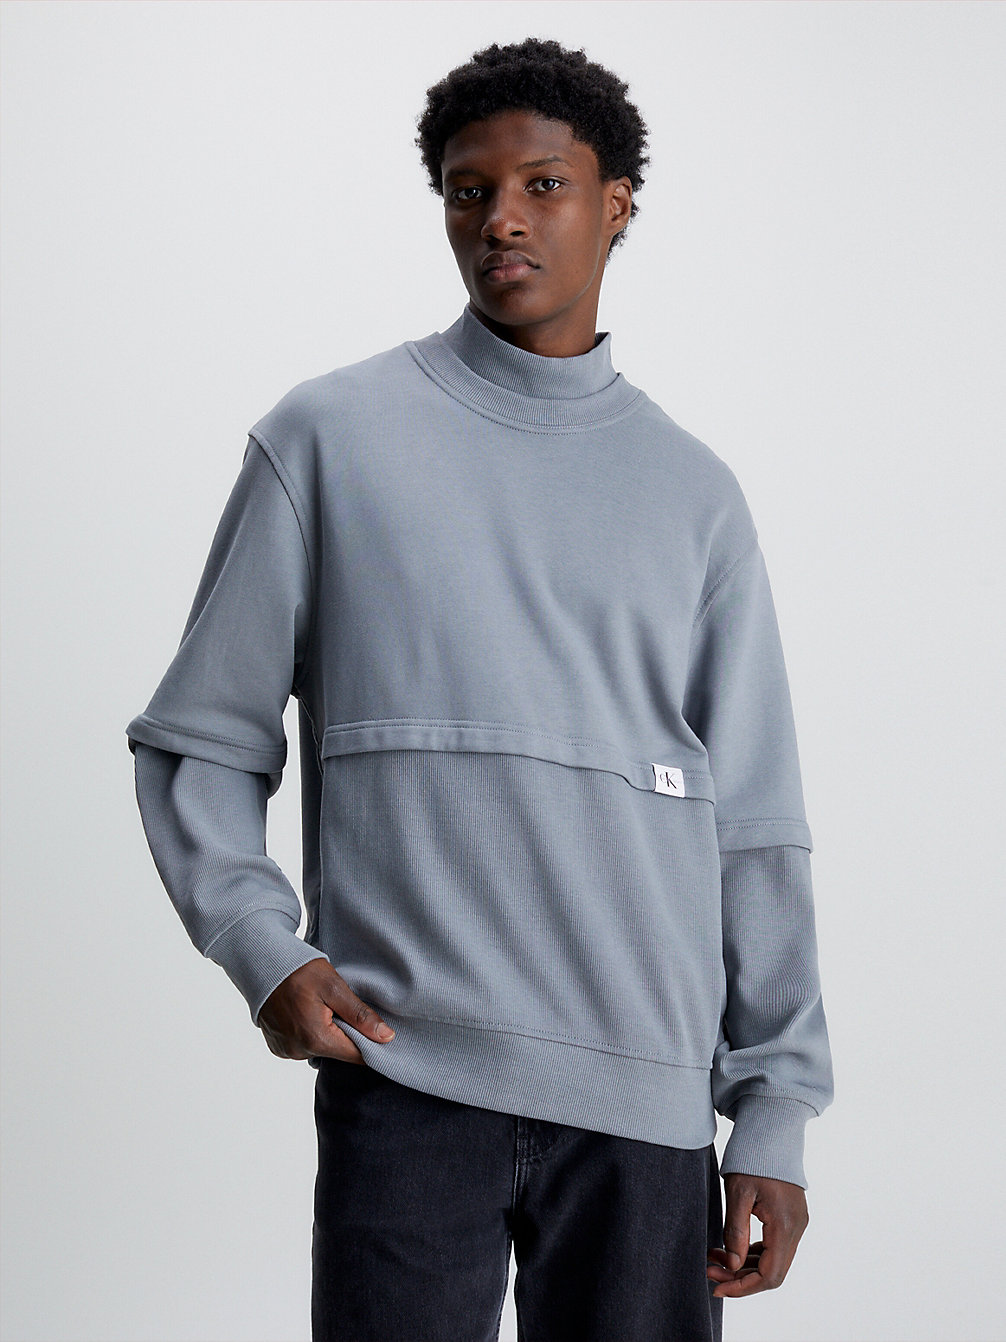 OVERCAST GREY > Relaxed Sweatshirt Van Materiaalmix > undefined heren - Calvin Klein